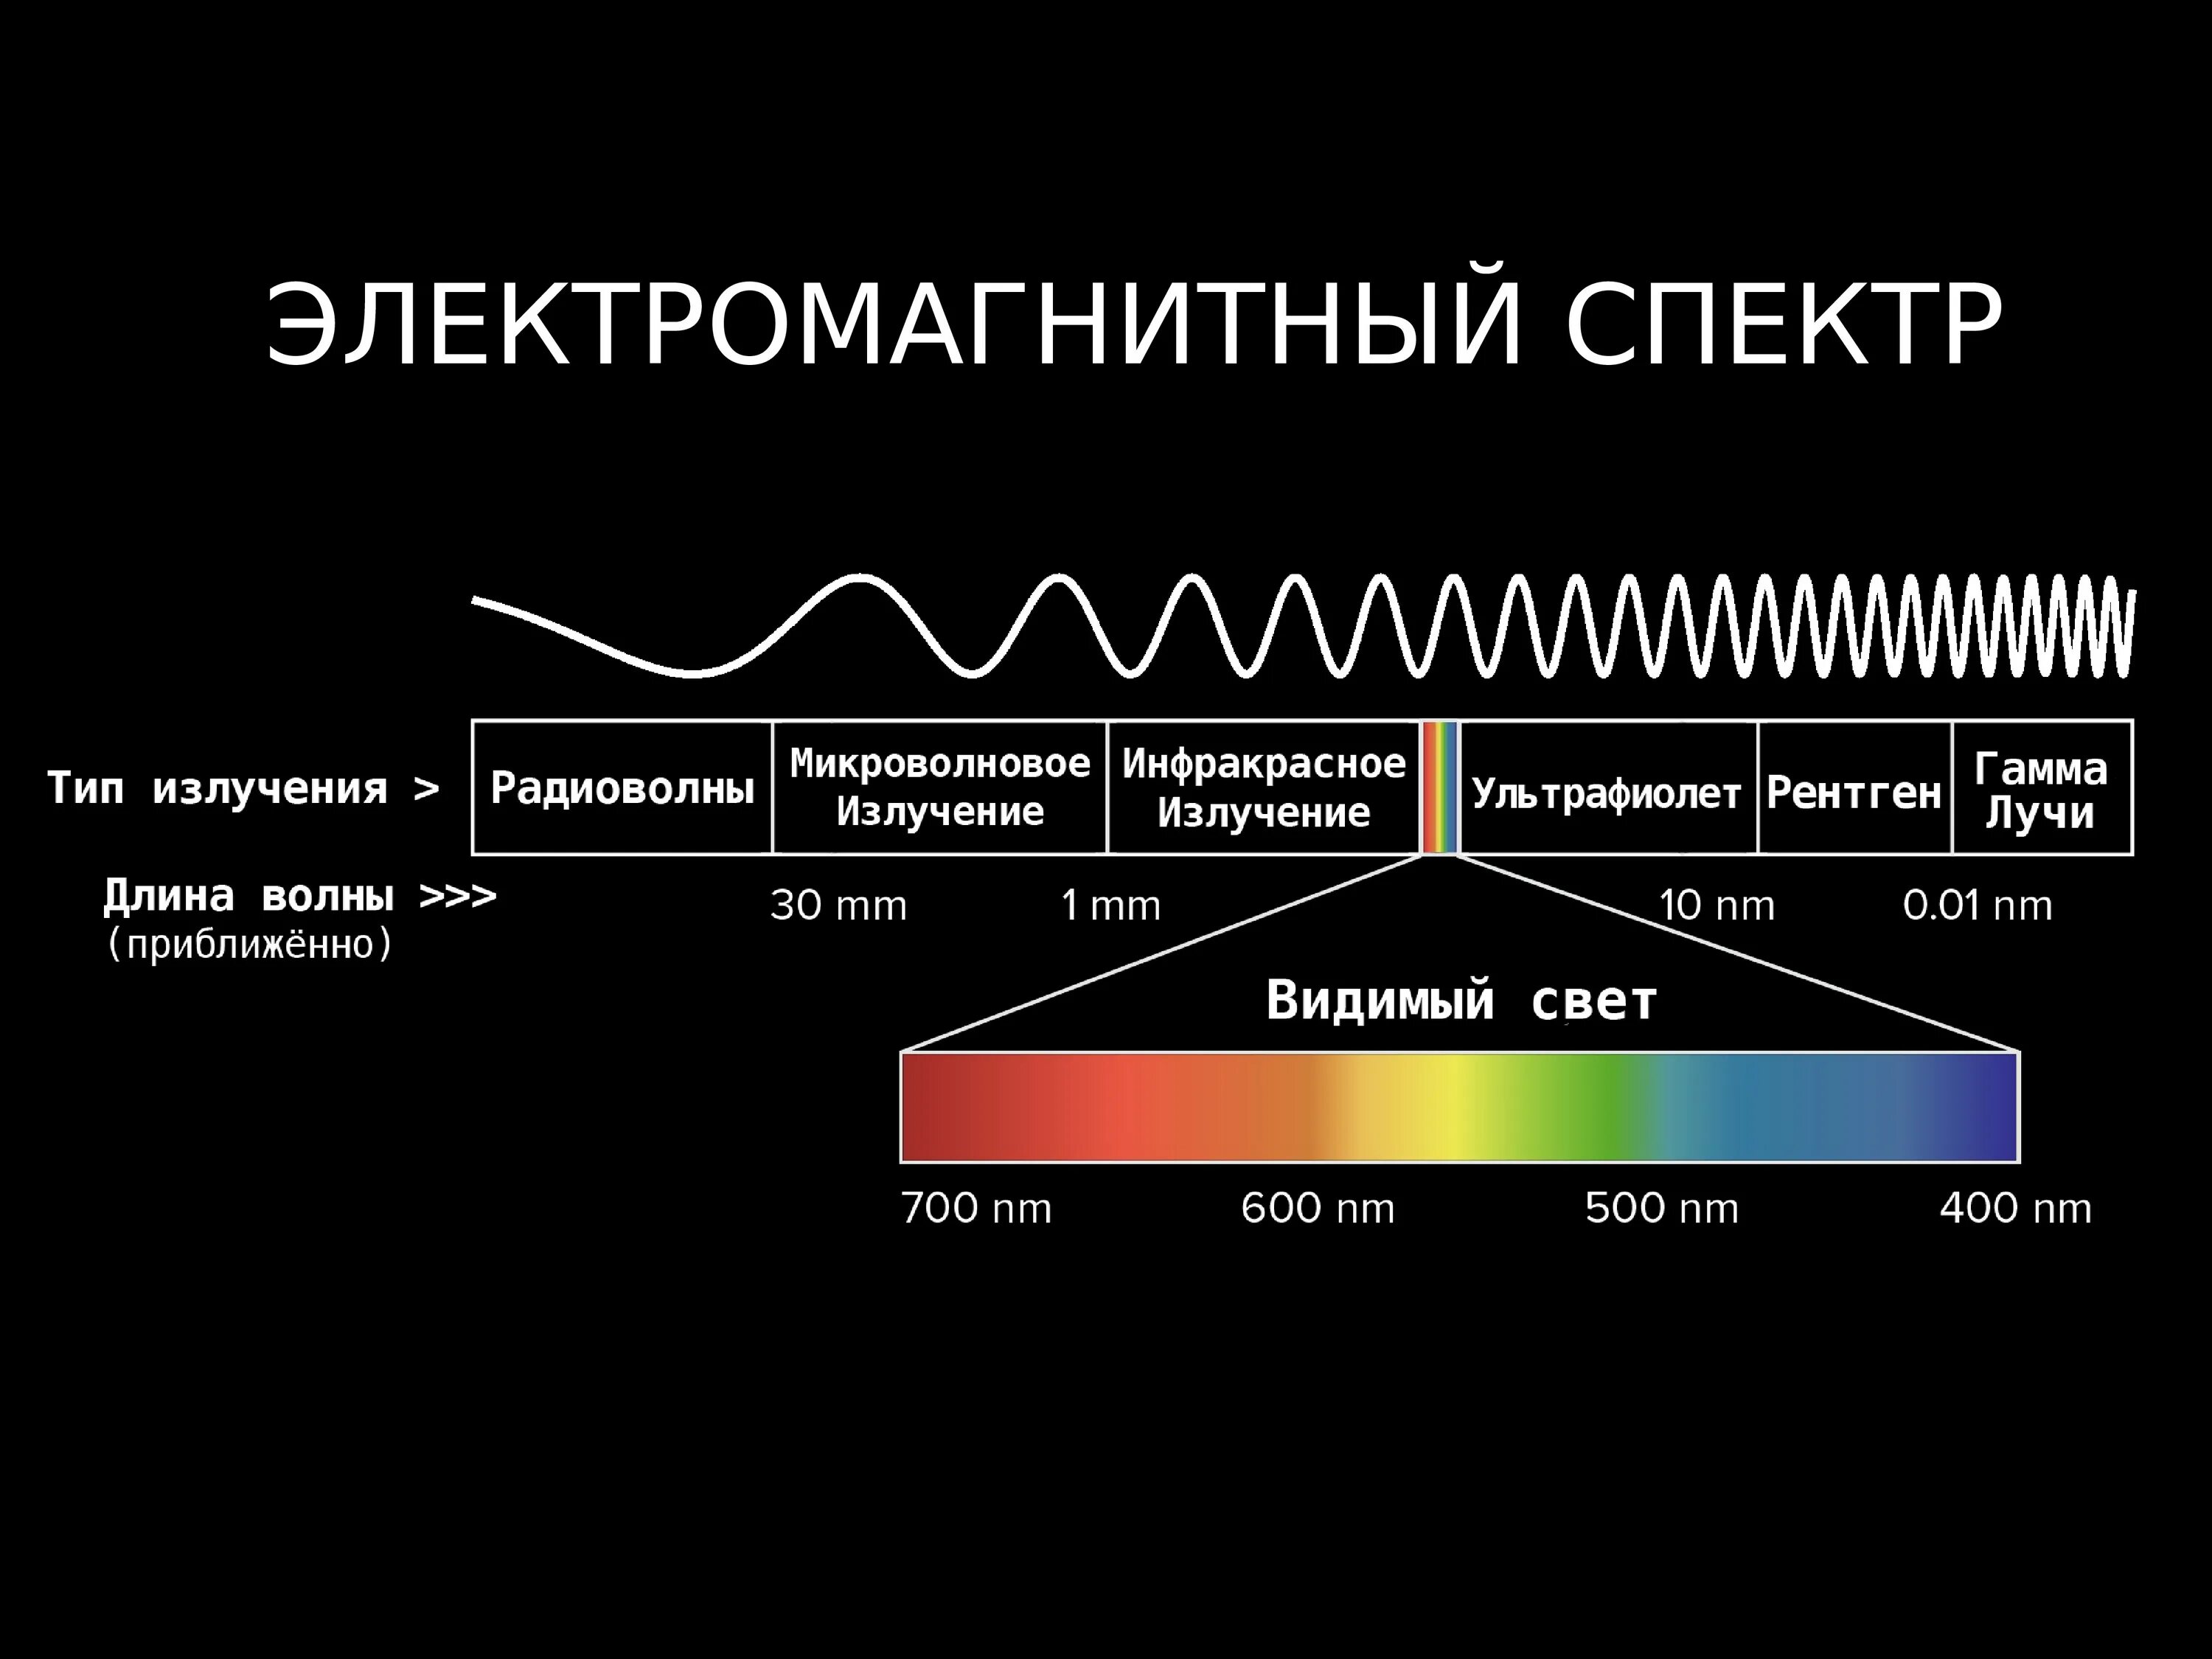 Диапазоны спектра электромагнитного излучения. Электромагнитное излучение спектр электромагнитного излучения. Спектр длин волн электромагнитных излучений. Длина волны электромагнитного излучения.